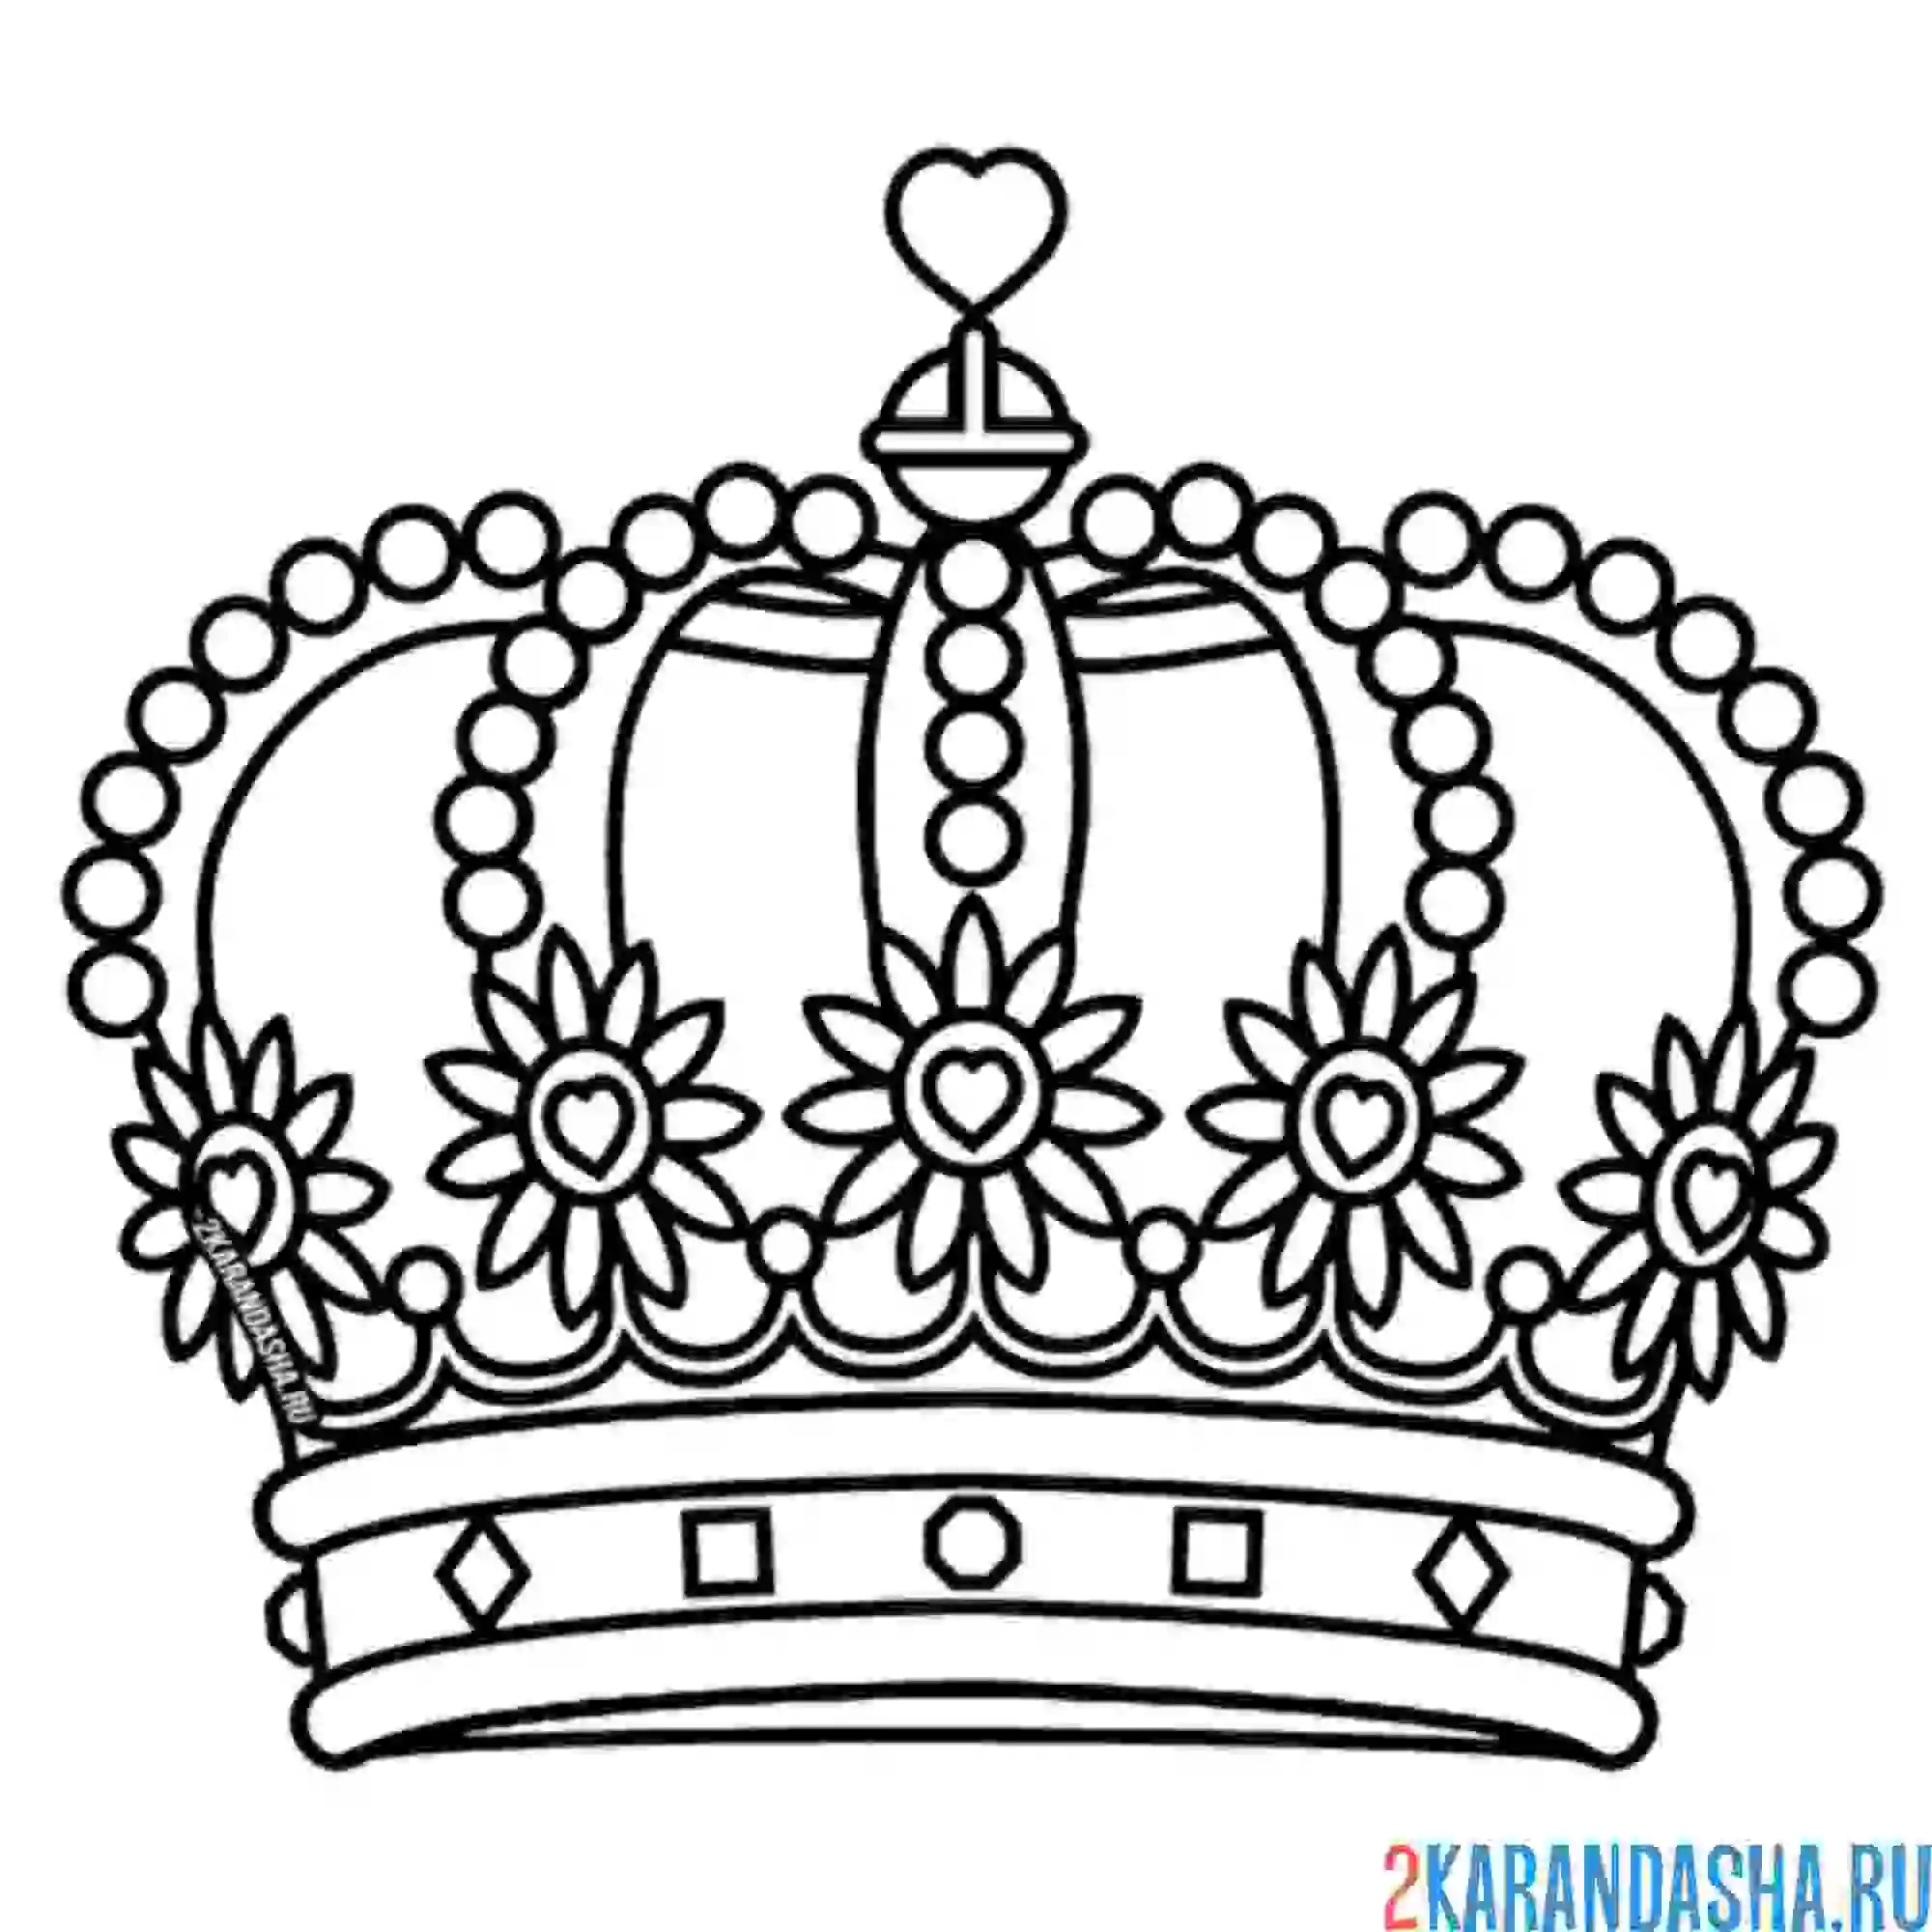 Раскраска дорогая королевская корона